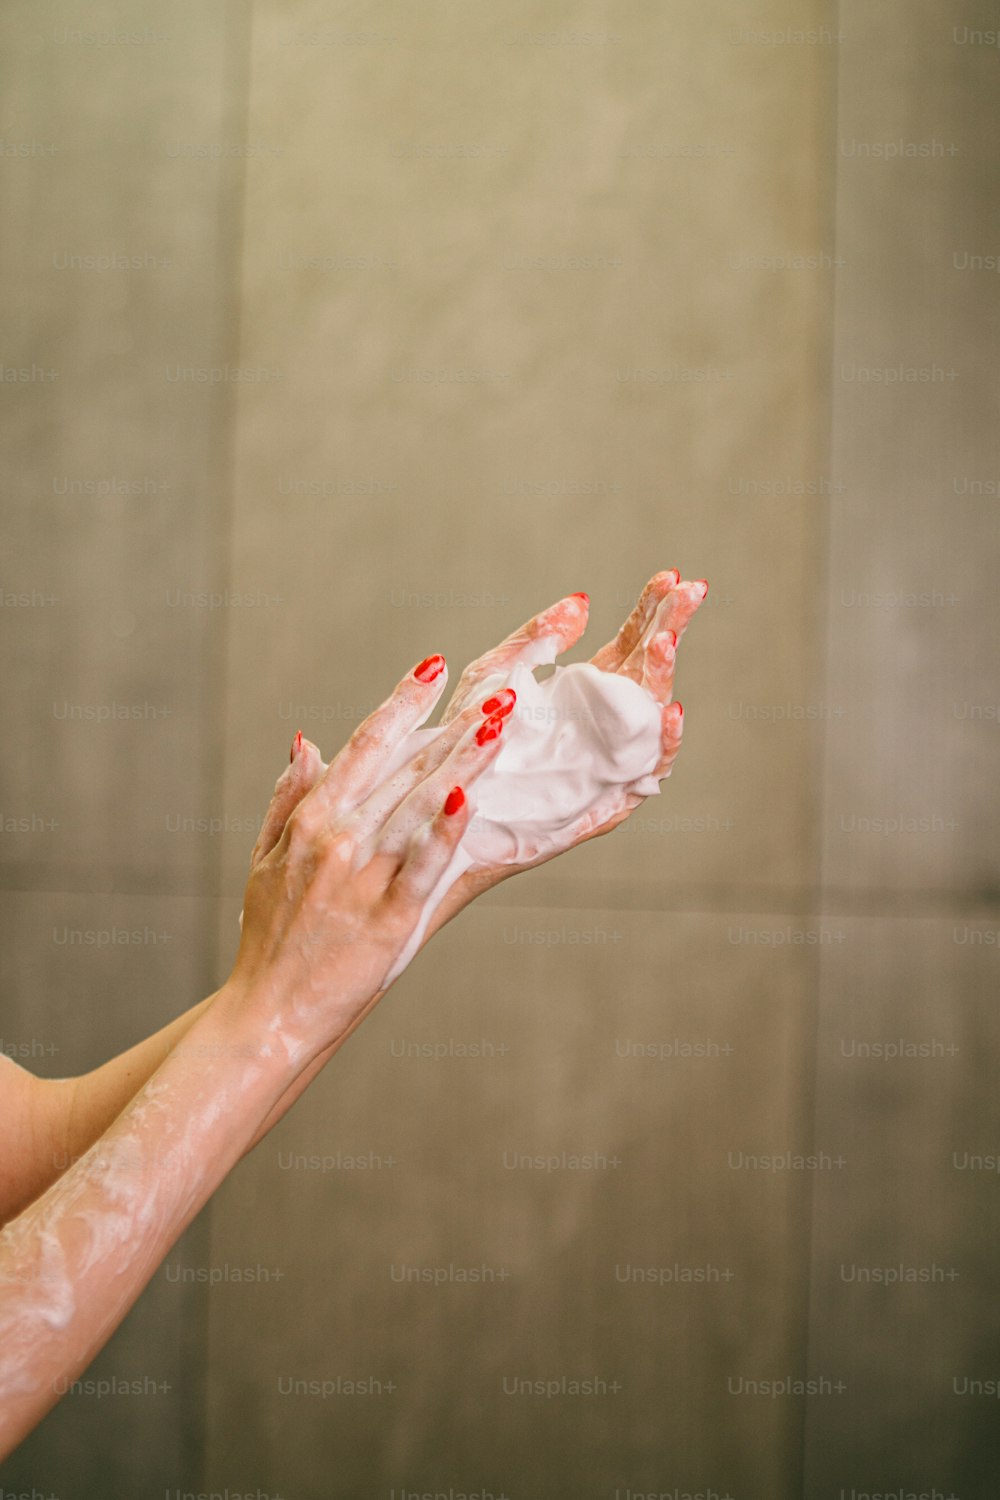 Una mujer extendiendo sus manos con pintura blanca y roja sobre ellas